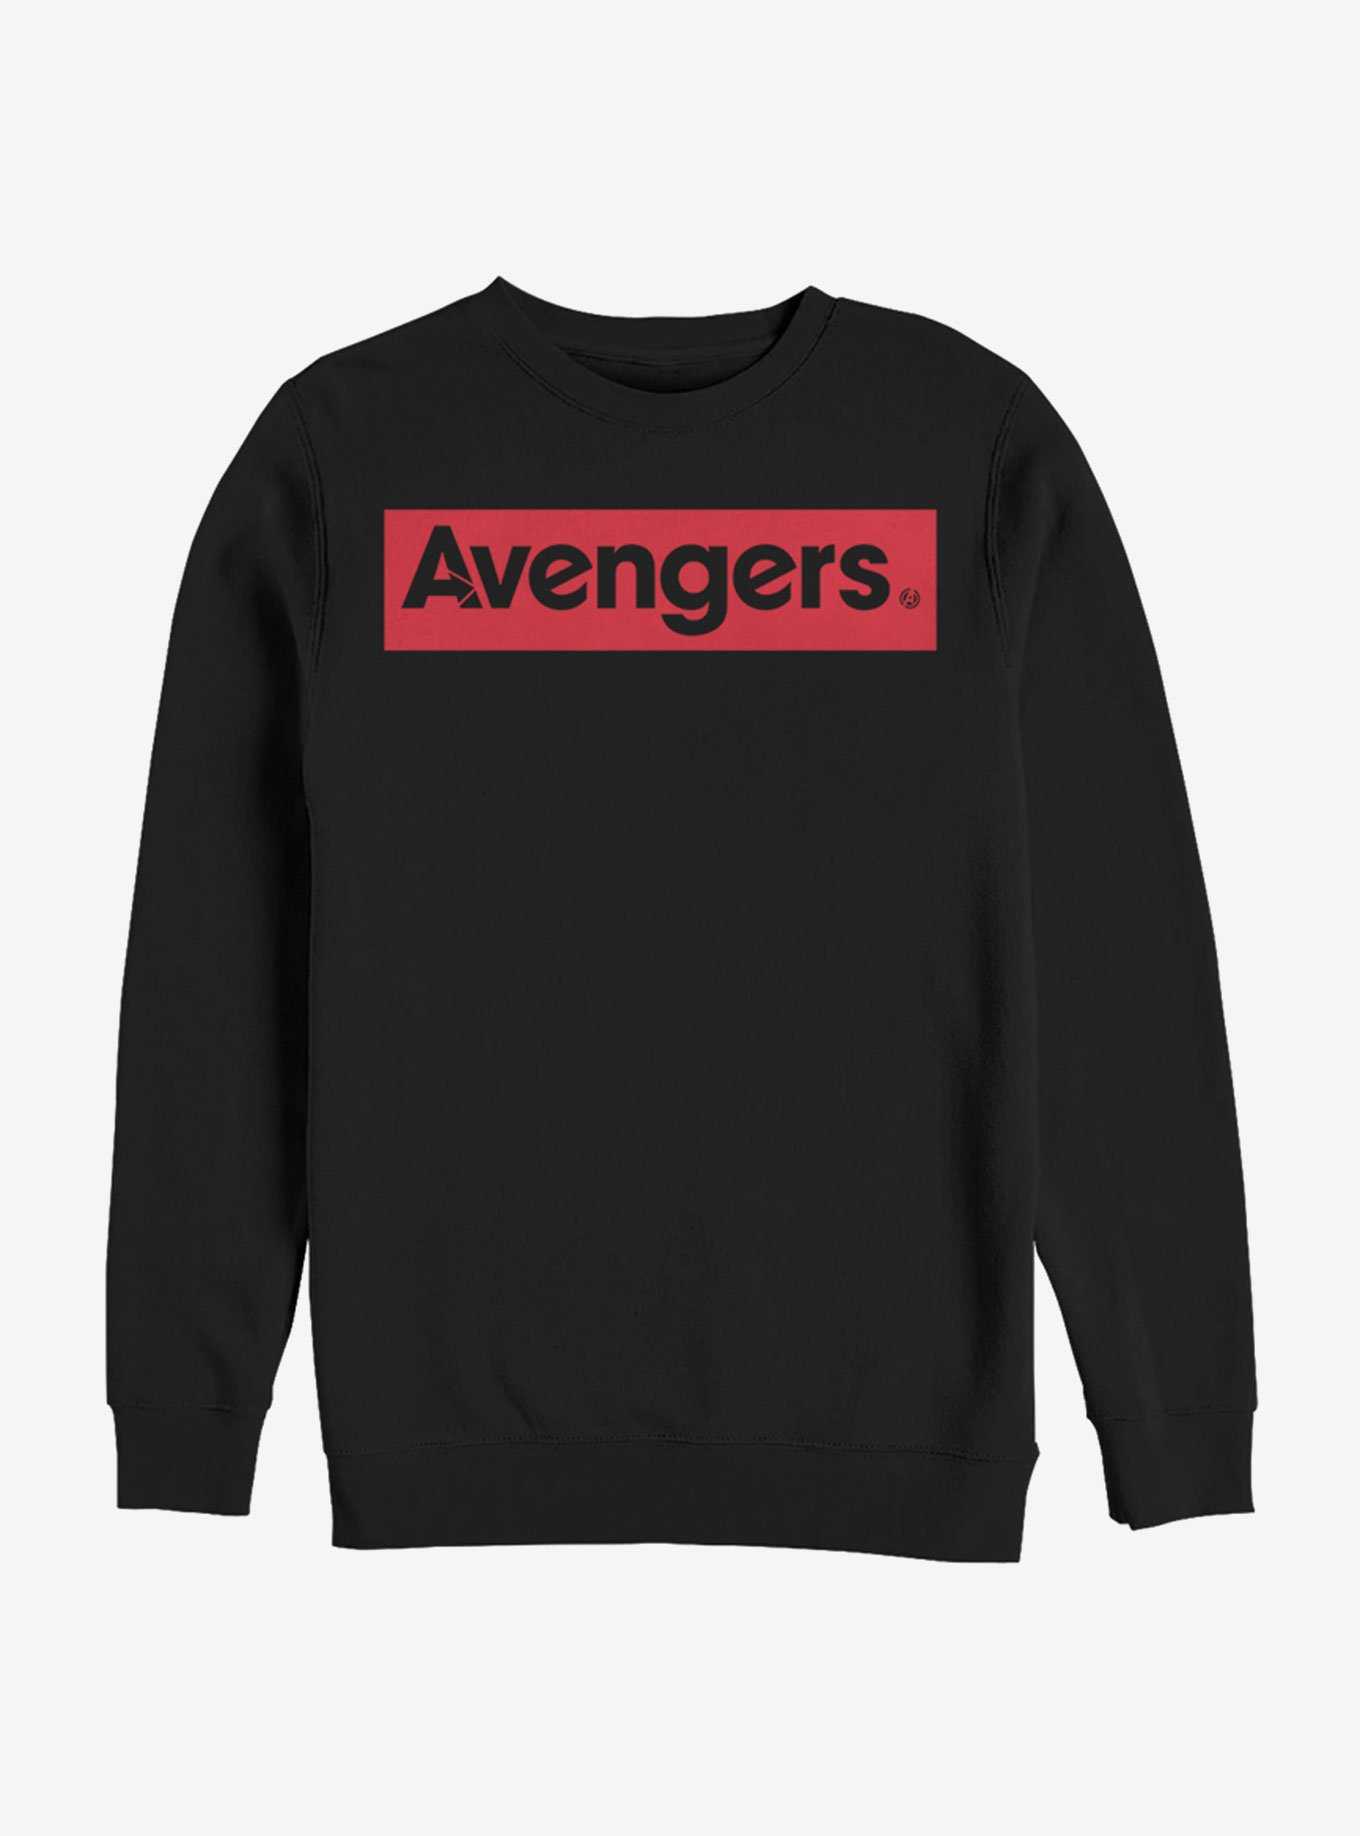 Marvel Avengers Endgame Avengers Sweatshirt, , hi-res